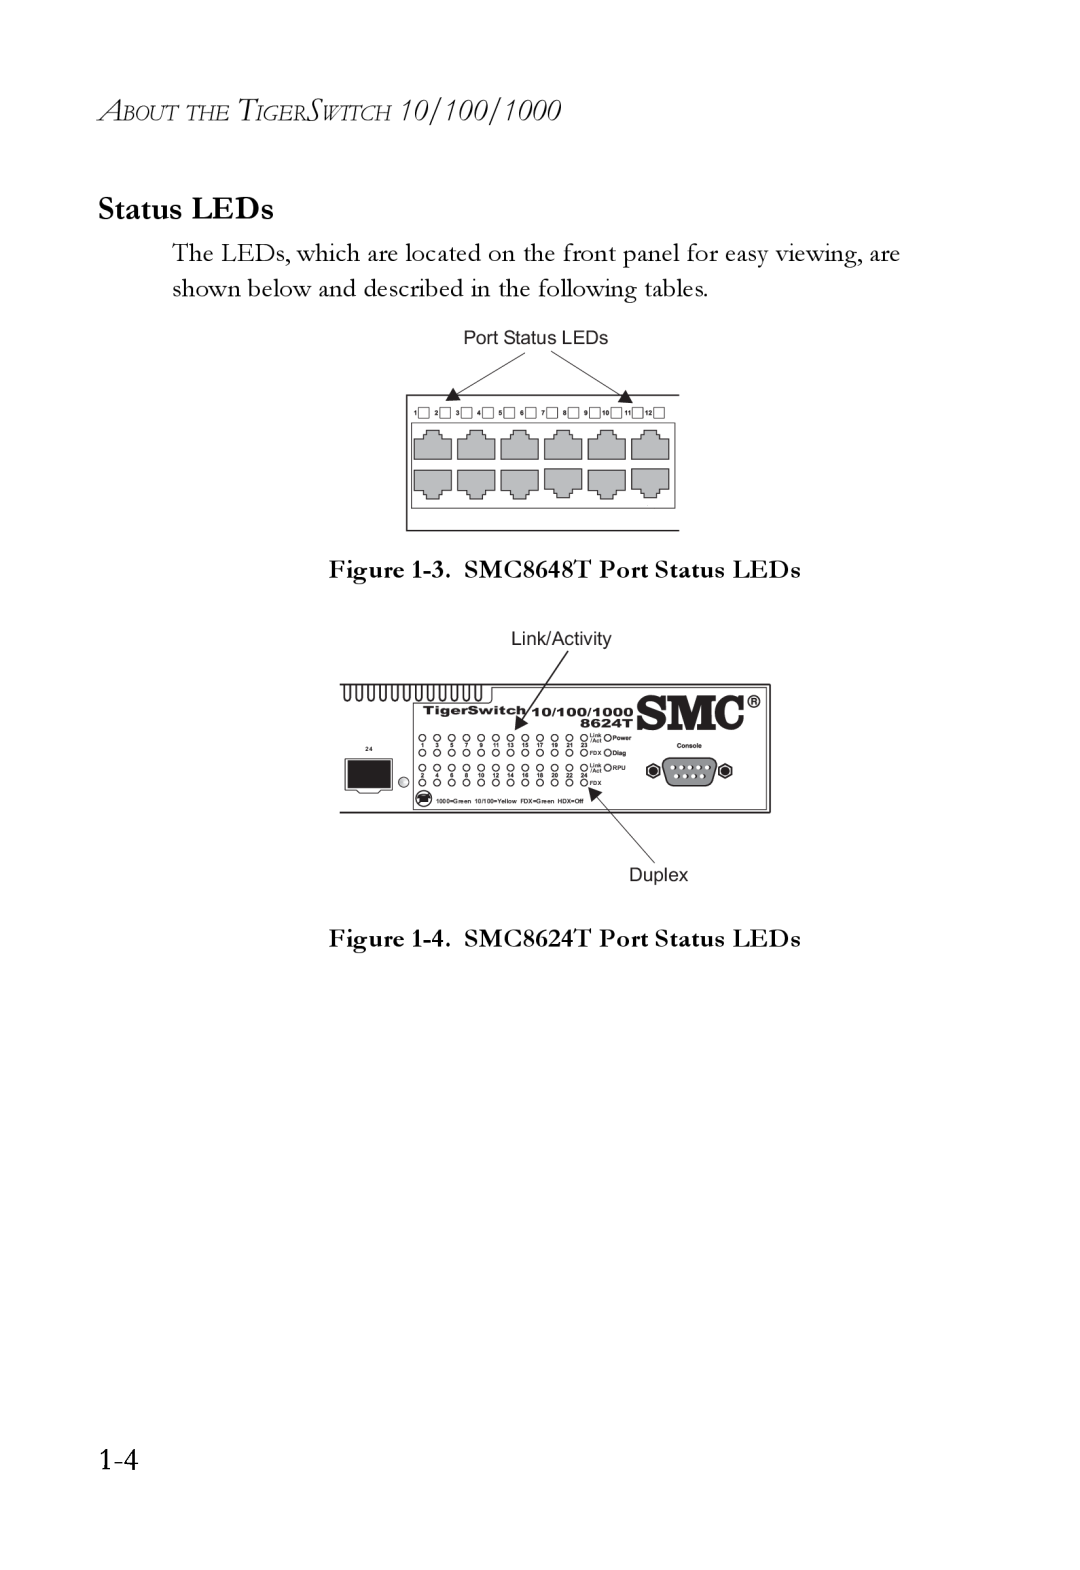 SMC Networks 3. SMC8648T Port Status LEDs, 4. SMC8624T Port Status LEDs, ABOUT THE TIGERSWITCH 10/100/1000, Duplex 